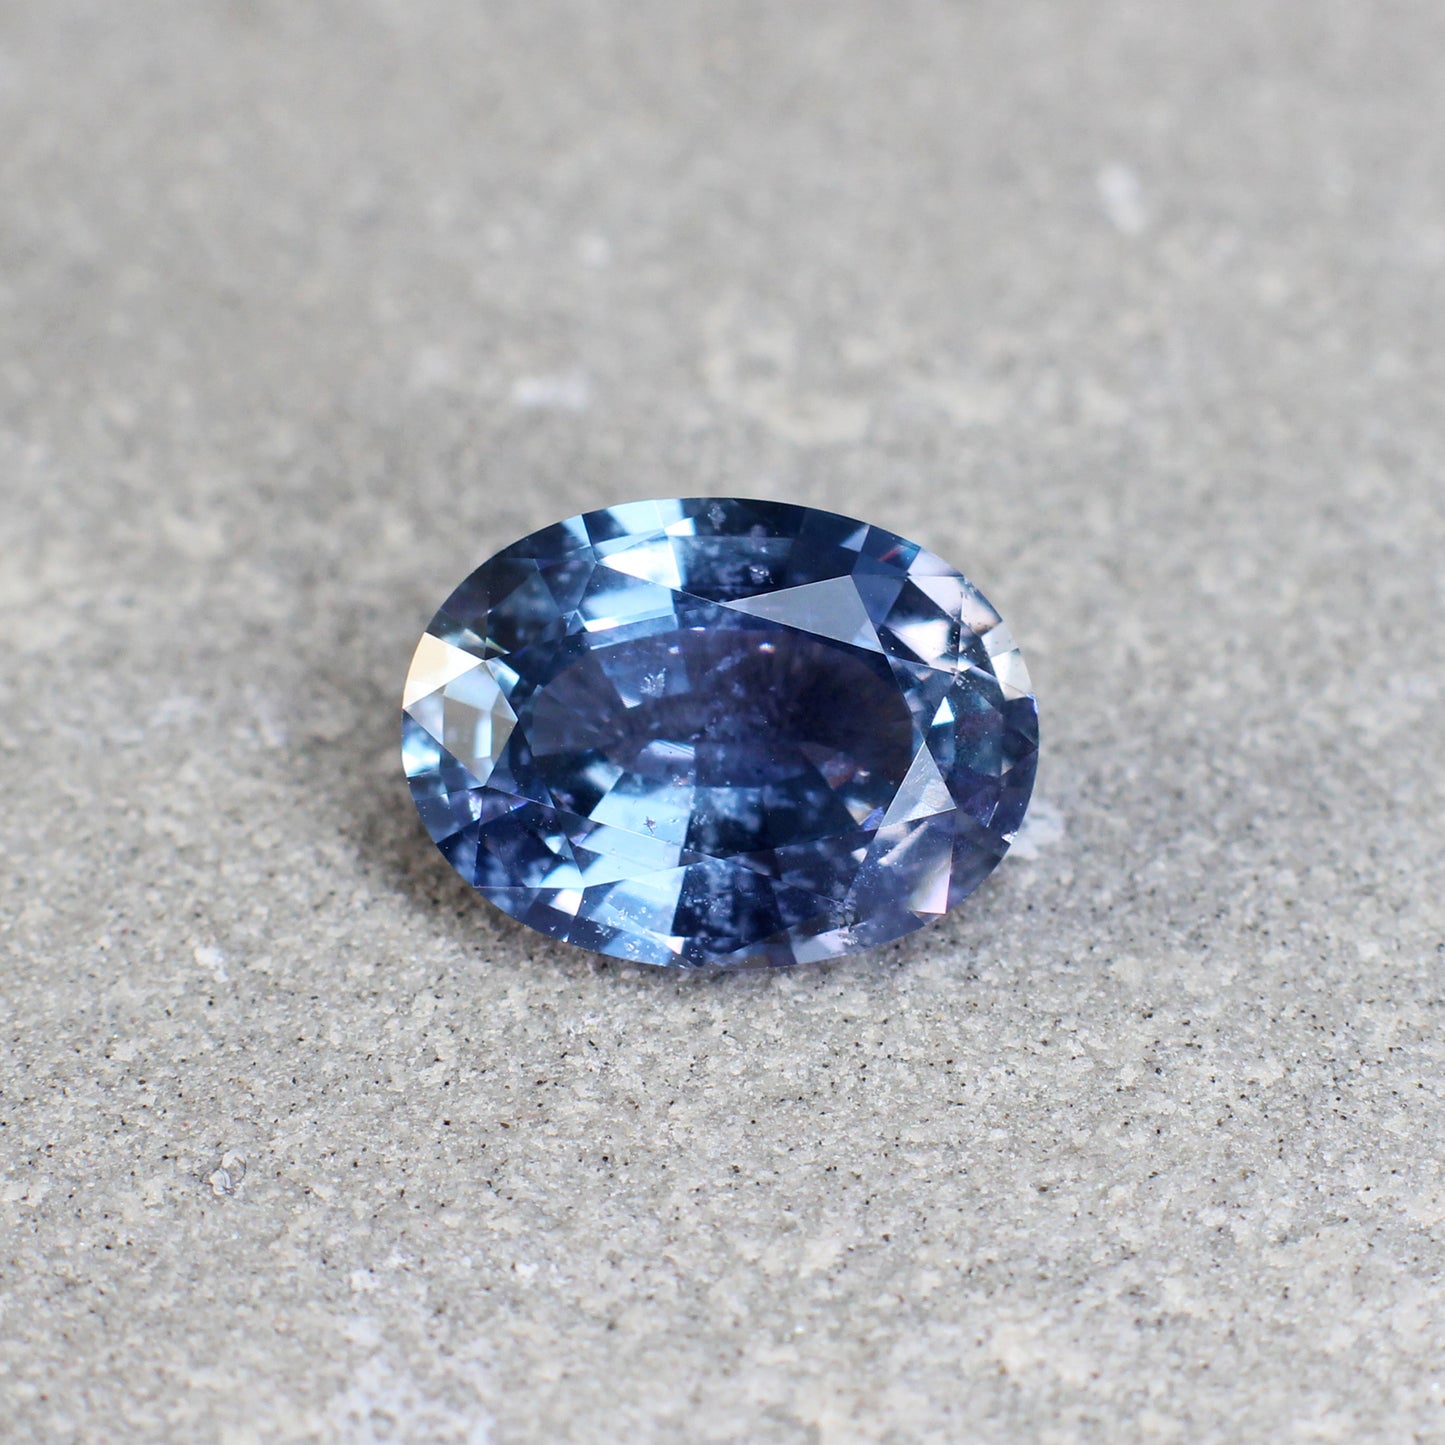 3.26ct Greenish Blue, Oval Sapphire, Heated, Sri Lanka - 10.49 x 7.80 x 4.51mm